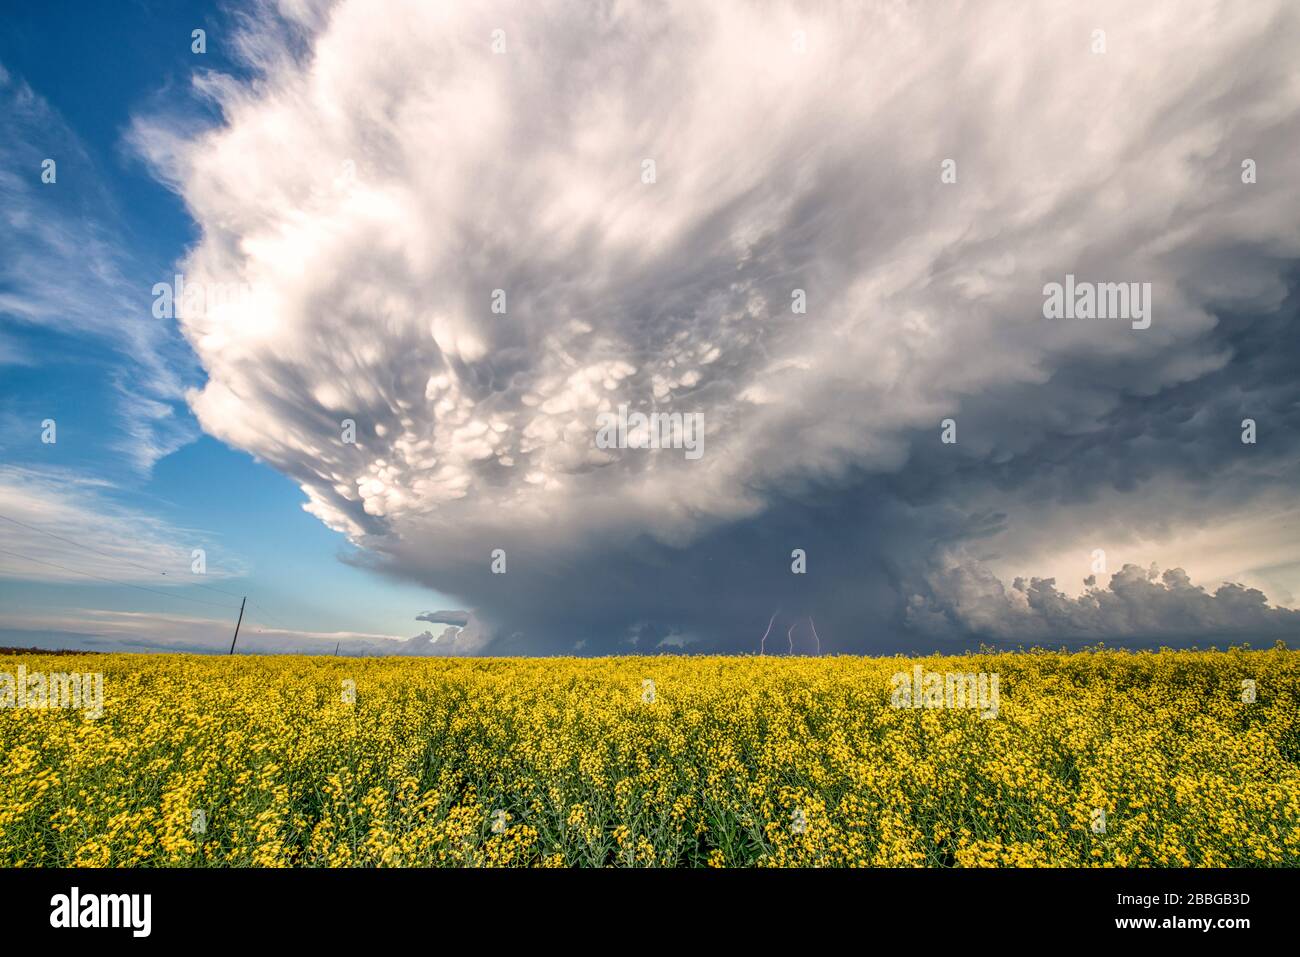 Sturm mit Mammatus und Blitzschlag über Rapsfeld im ländlichen Süden Manitobas Kanadas Stockfoto